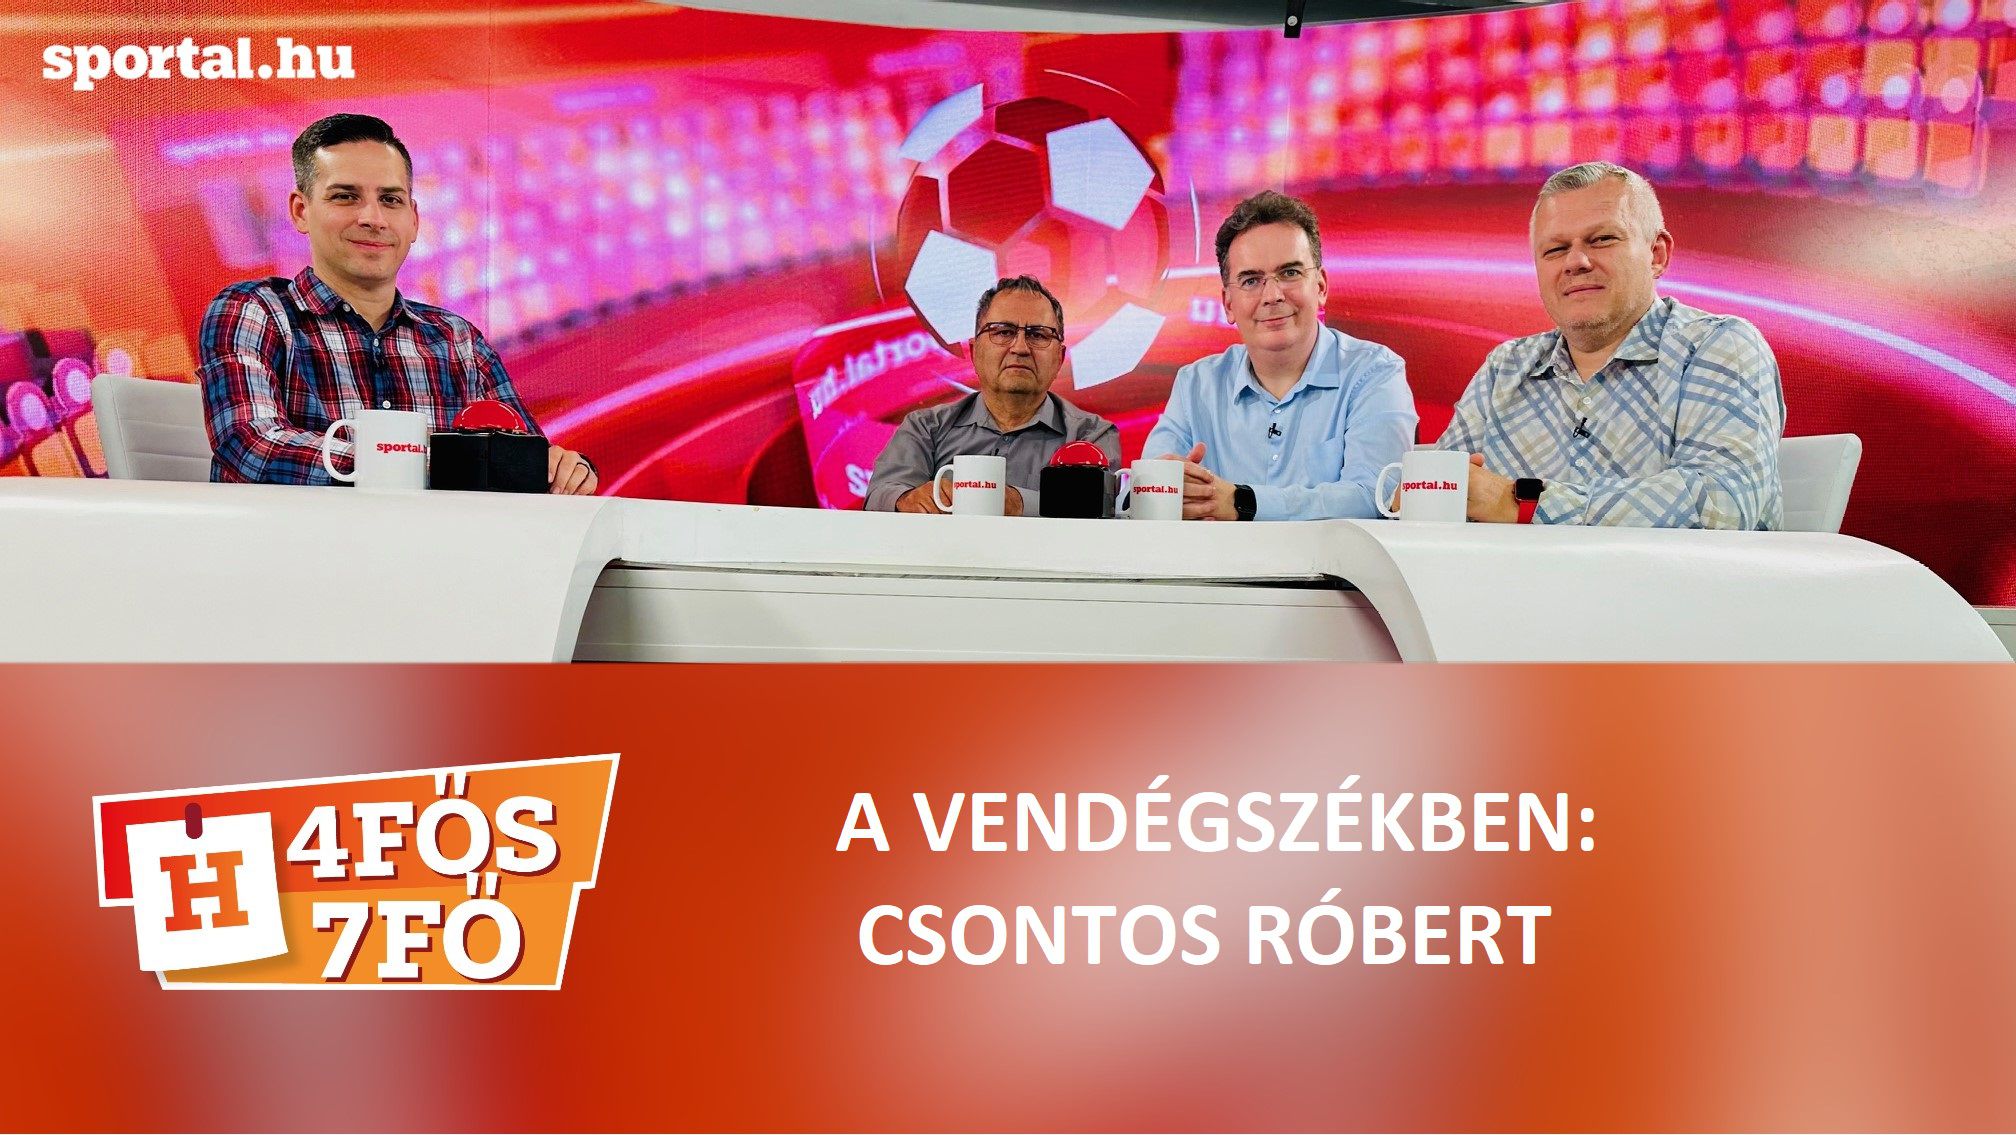 A Sportál Tv stúdiójában: Cselleng Ádám, Szekeres Tamás, Kecskés István és meghívott vendégünk, Csontos Róbert